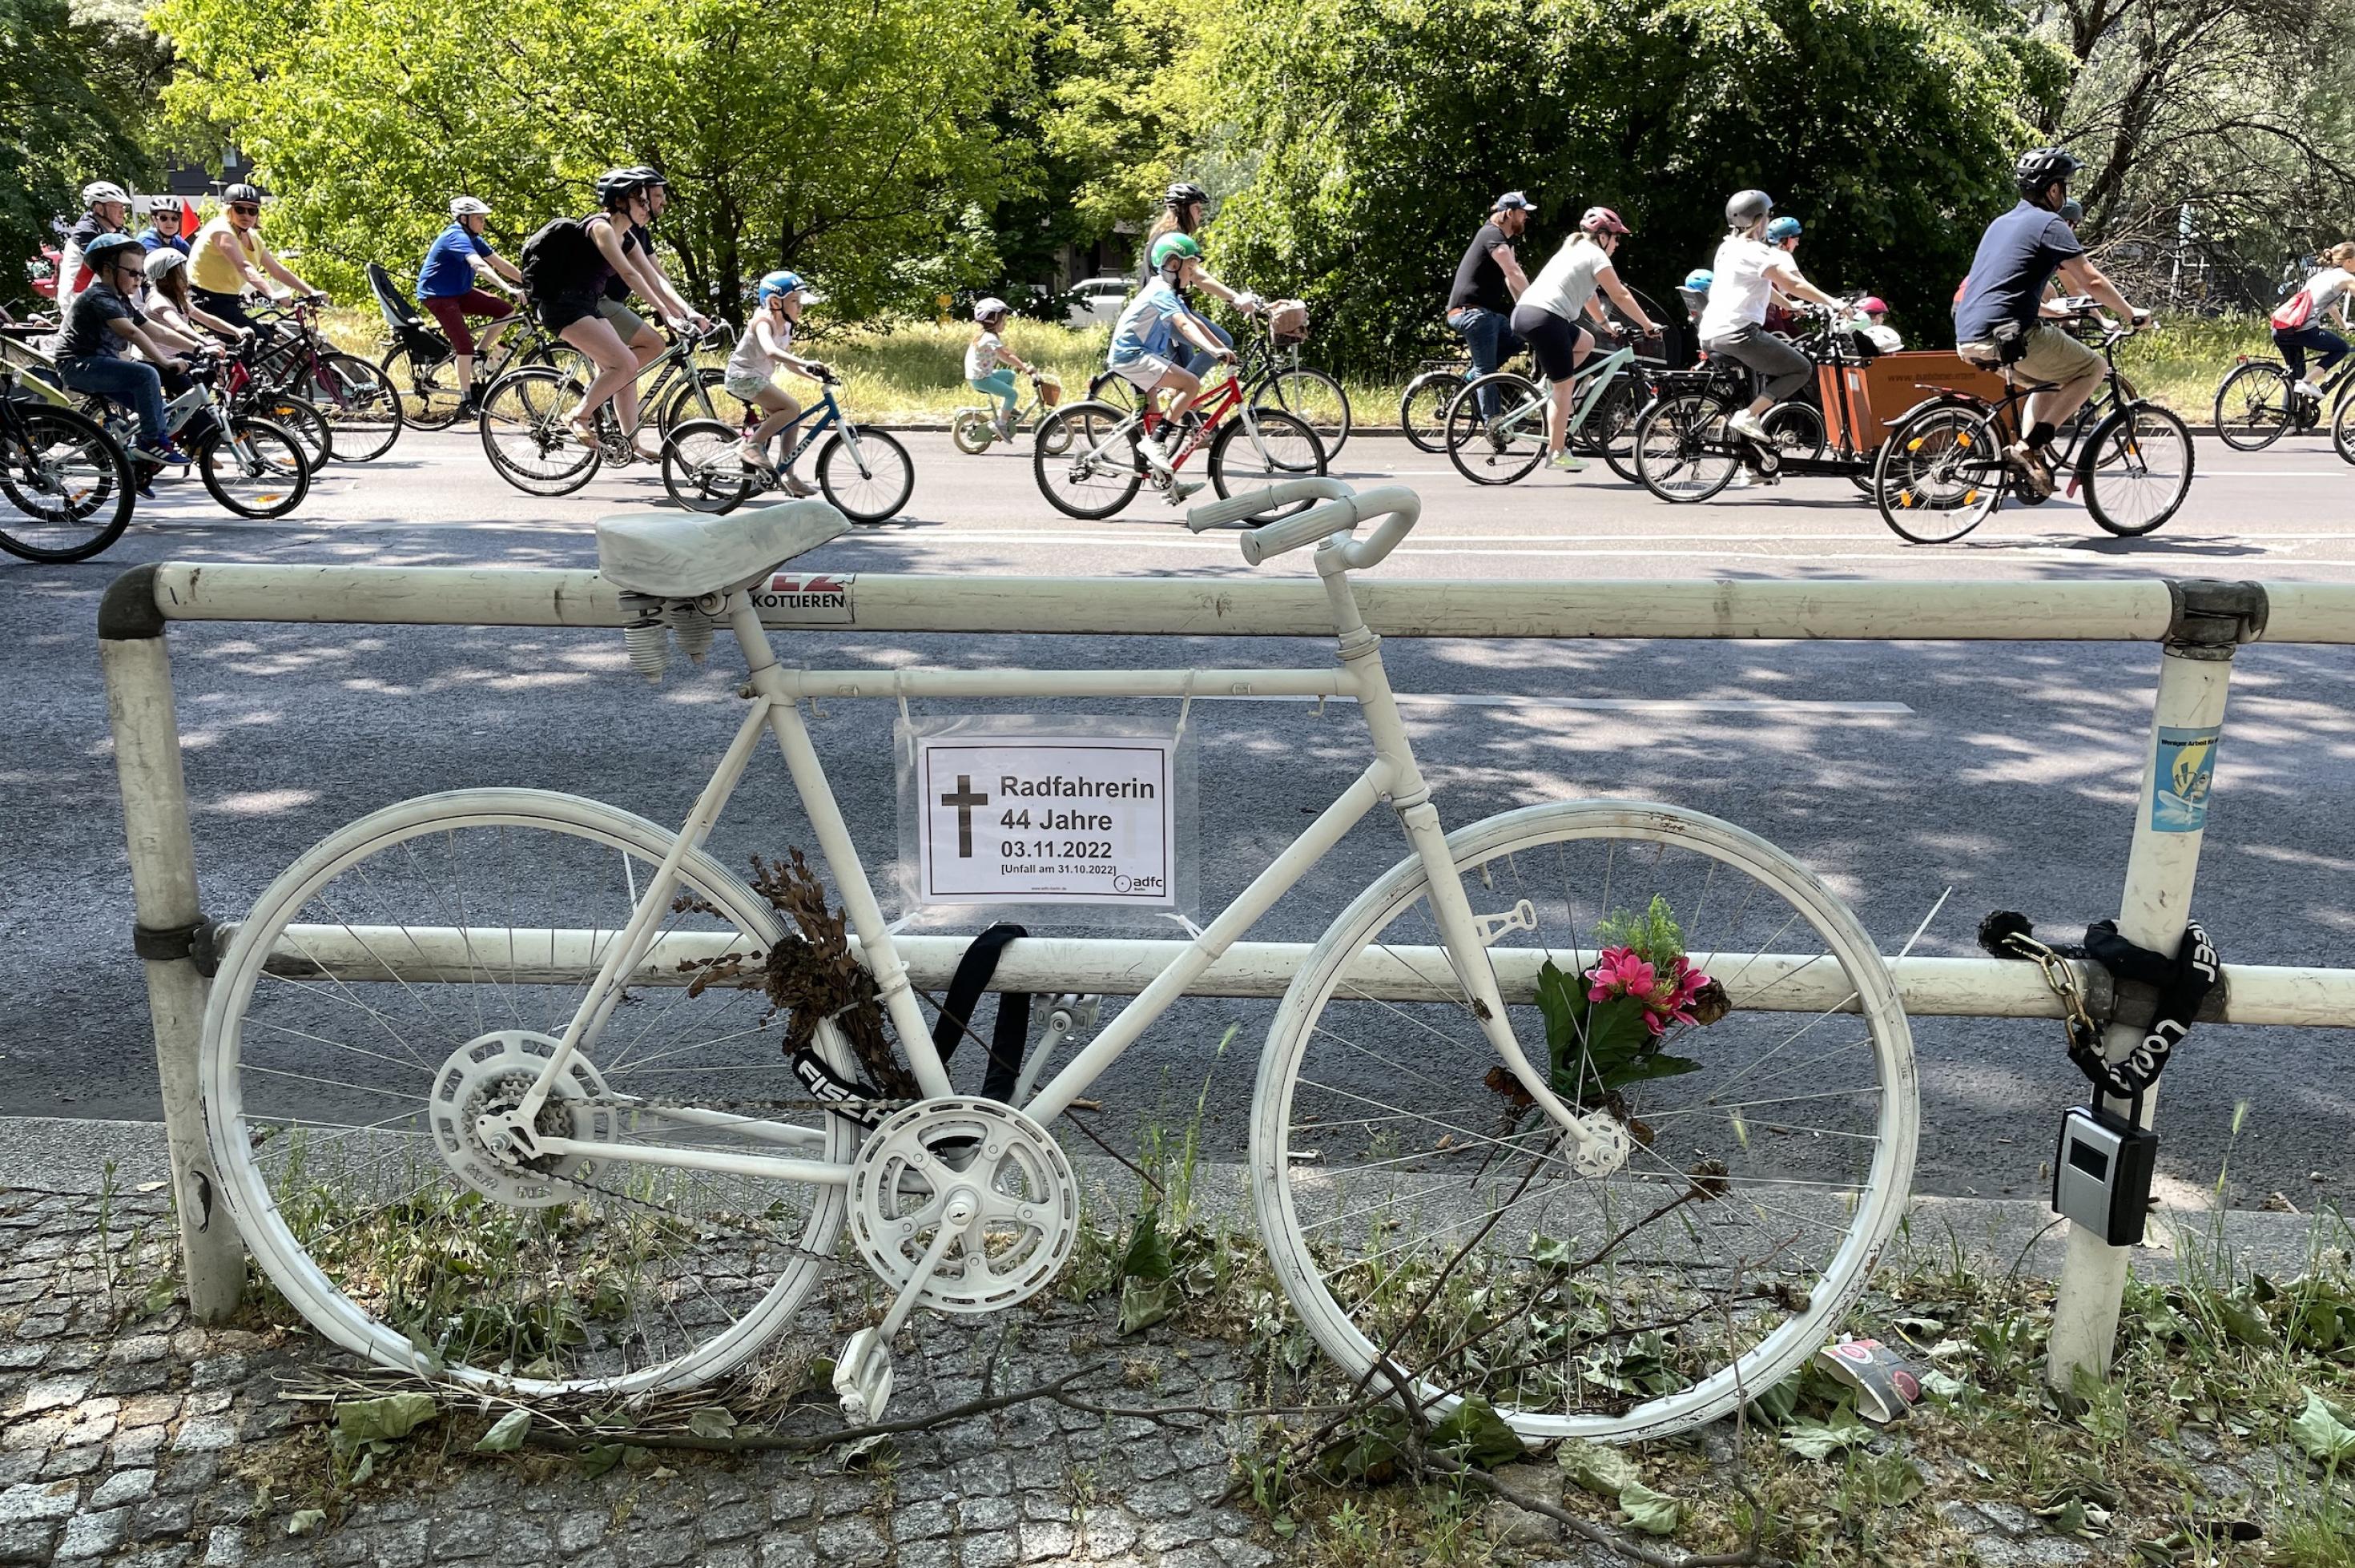 Ein weißes Fahrrad erinnert an den Unfalltod einer 44-jährigen am 3.11.2022, dahinter vorbeifahrende Radfahrer, auch Kleinkinder.